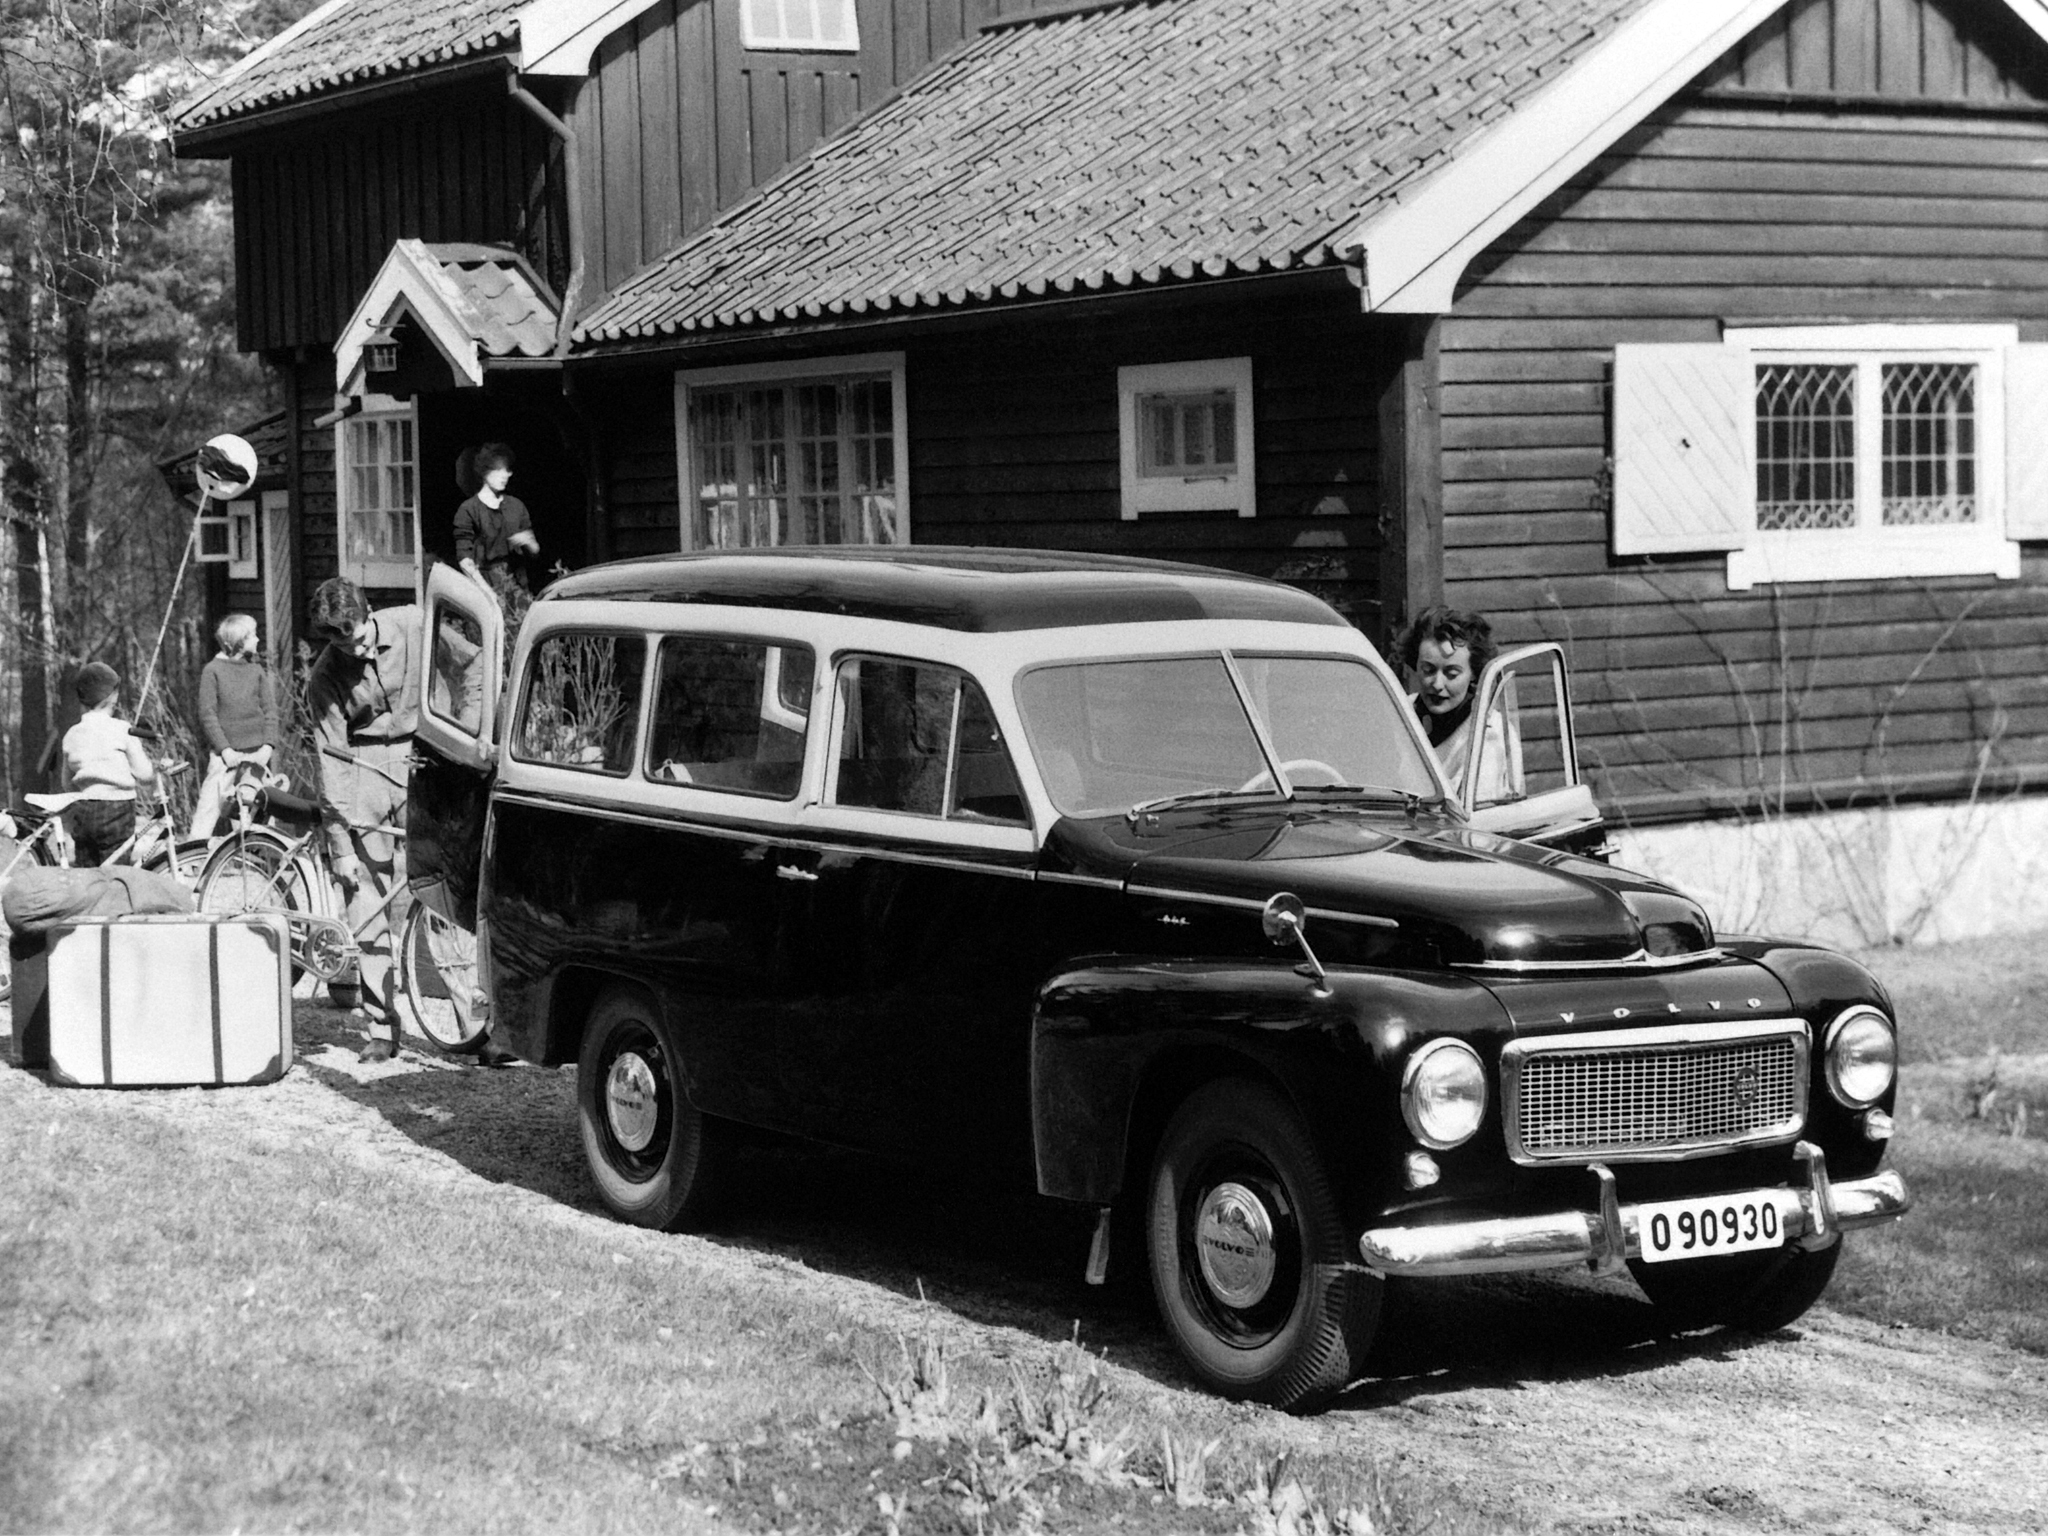 1958, Volvo, Pv445, Ph, Duett, Stationwagon, Retro, Sw Wallpaper